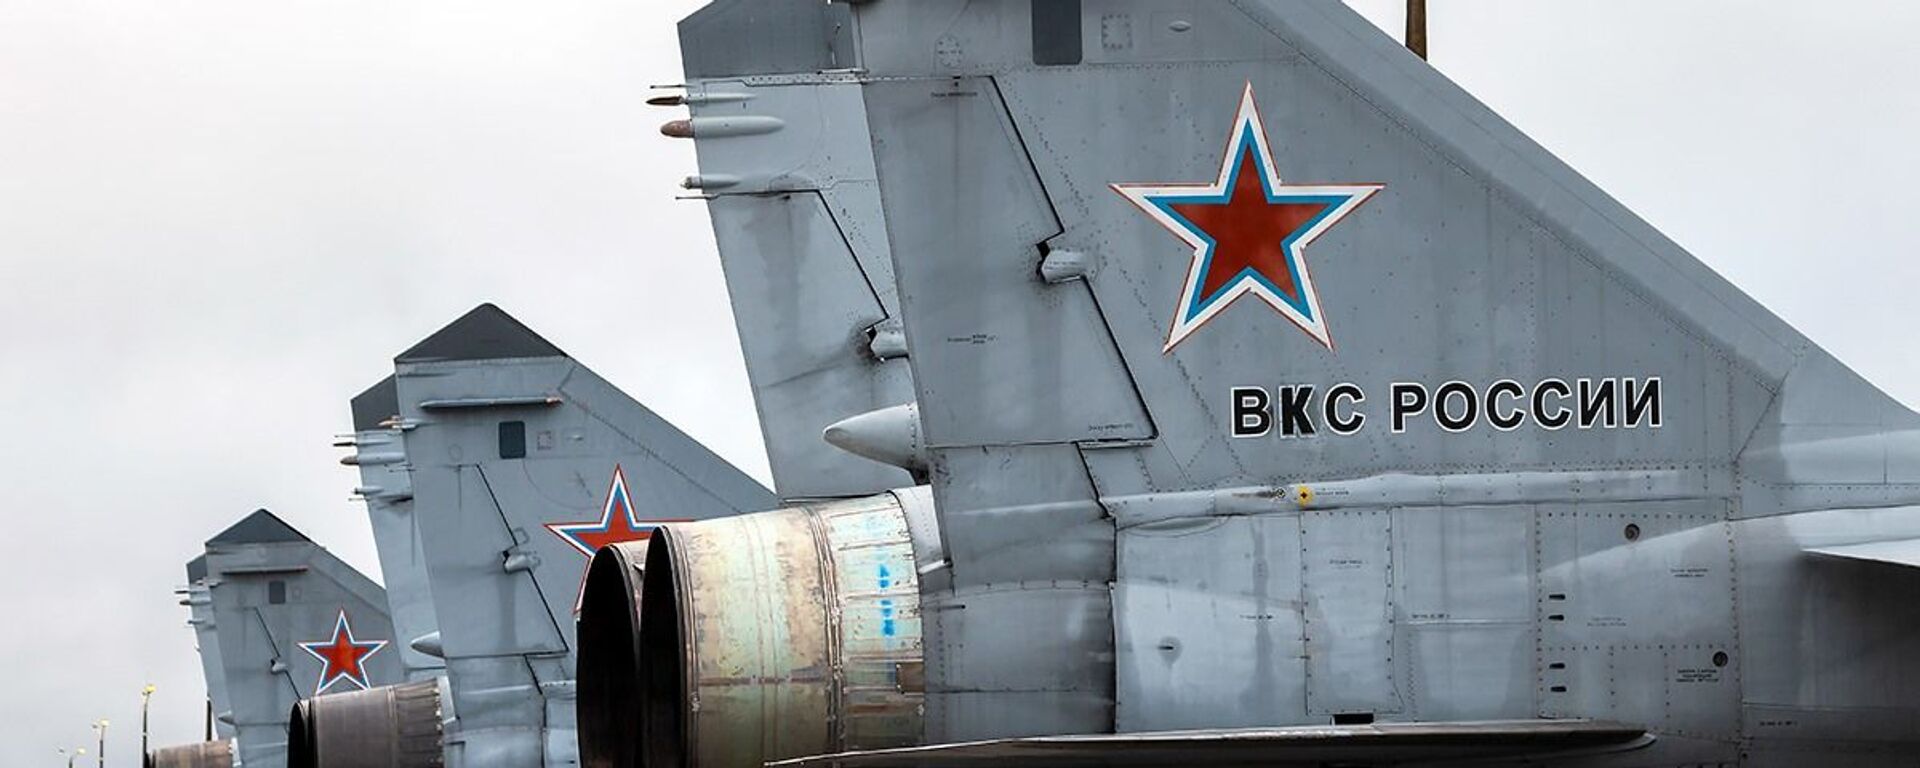 مناورات الطيران الحربي الروسي لمقاتلات «سو-25» و «ميغ- 31» التابعة للمنطقة الغربية لشرق روسيا، في مقاطعة تفير، 23-24 نوفمبر 2020 - سبوتنيك عربي, 1920, 02.10.2022